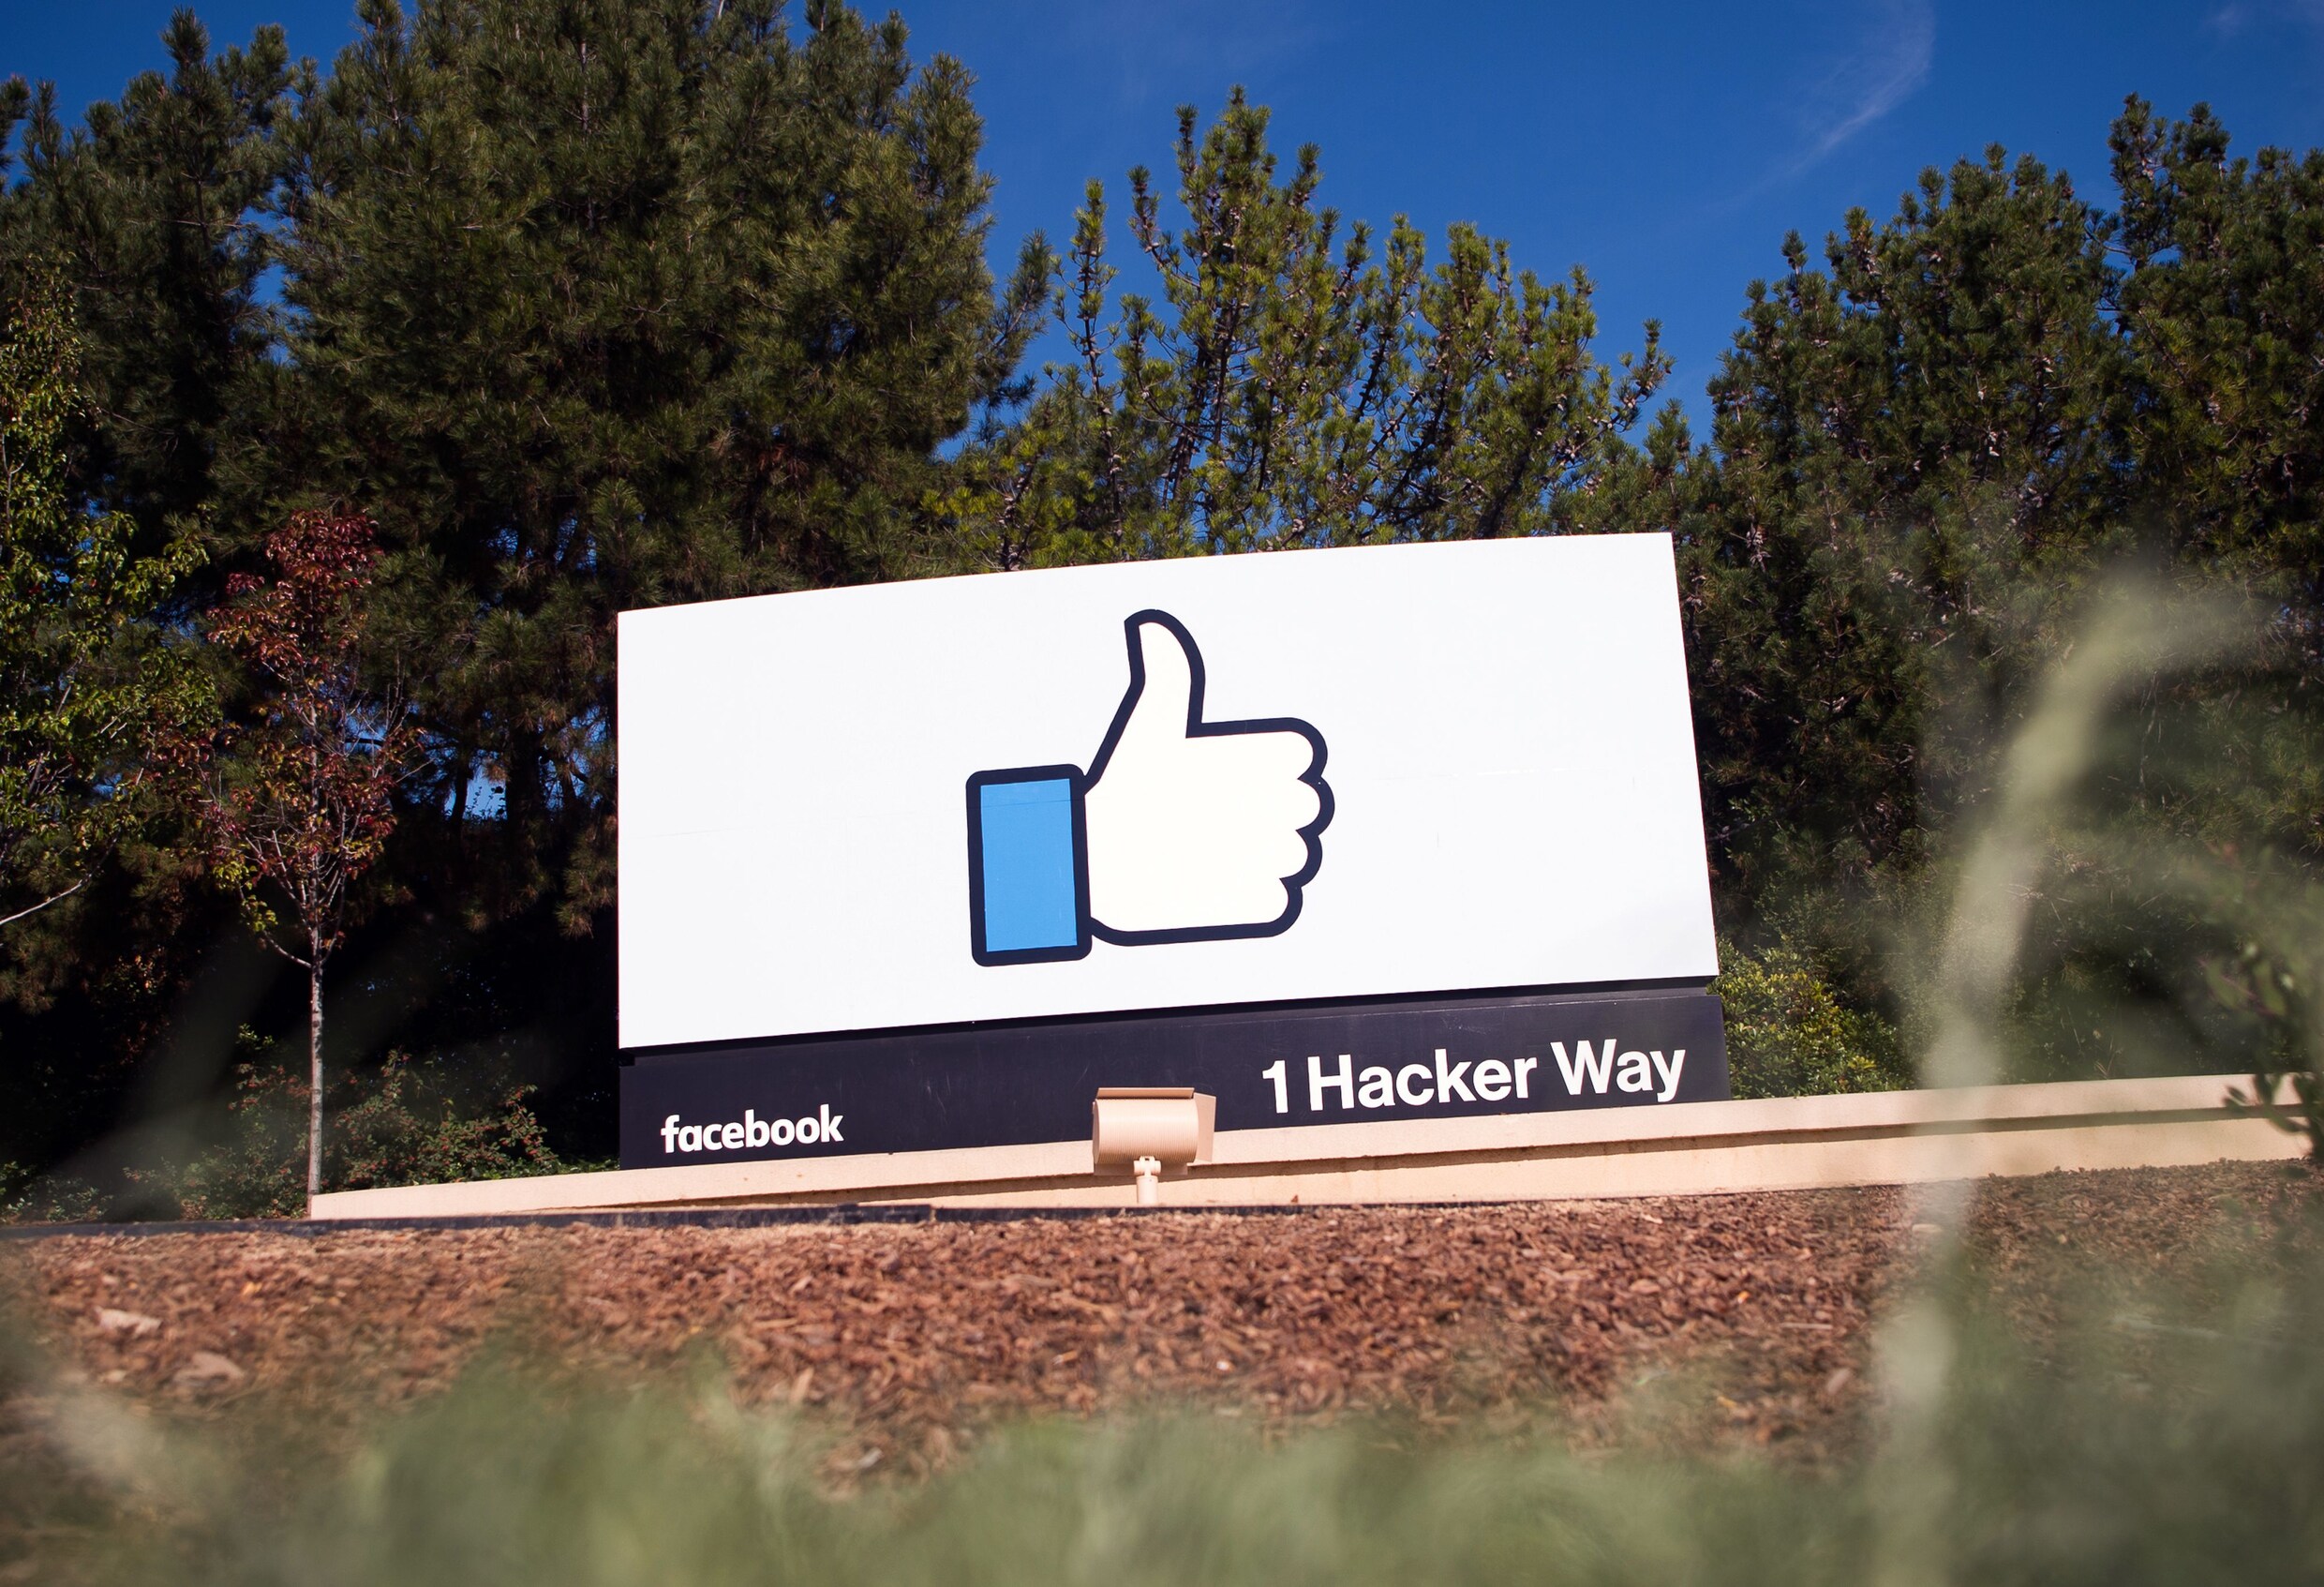 "Sociale netwerken kunnen gevaar voor democratie inhouden", zegt Facebook